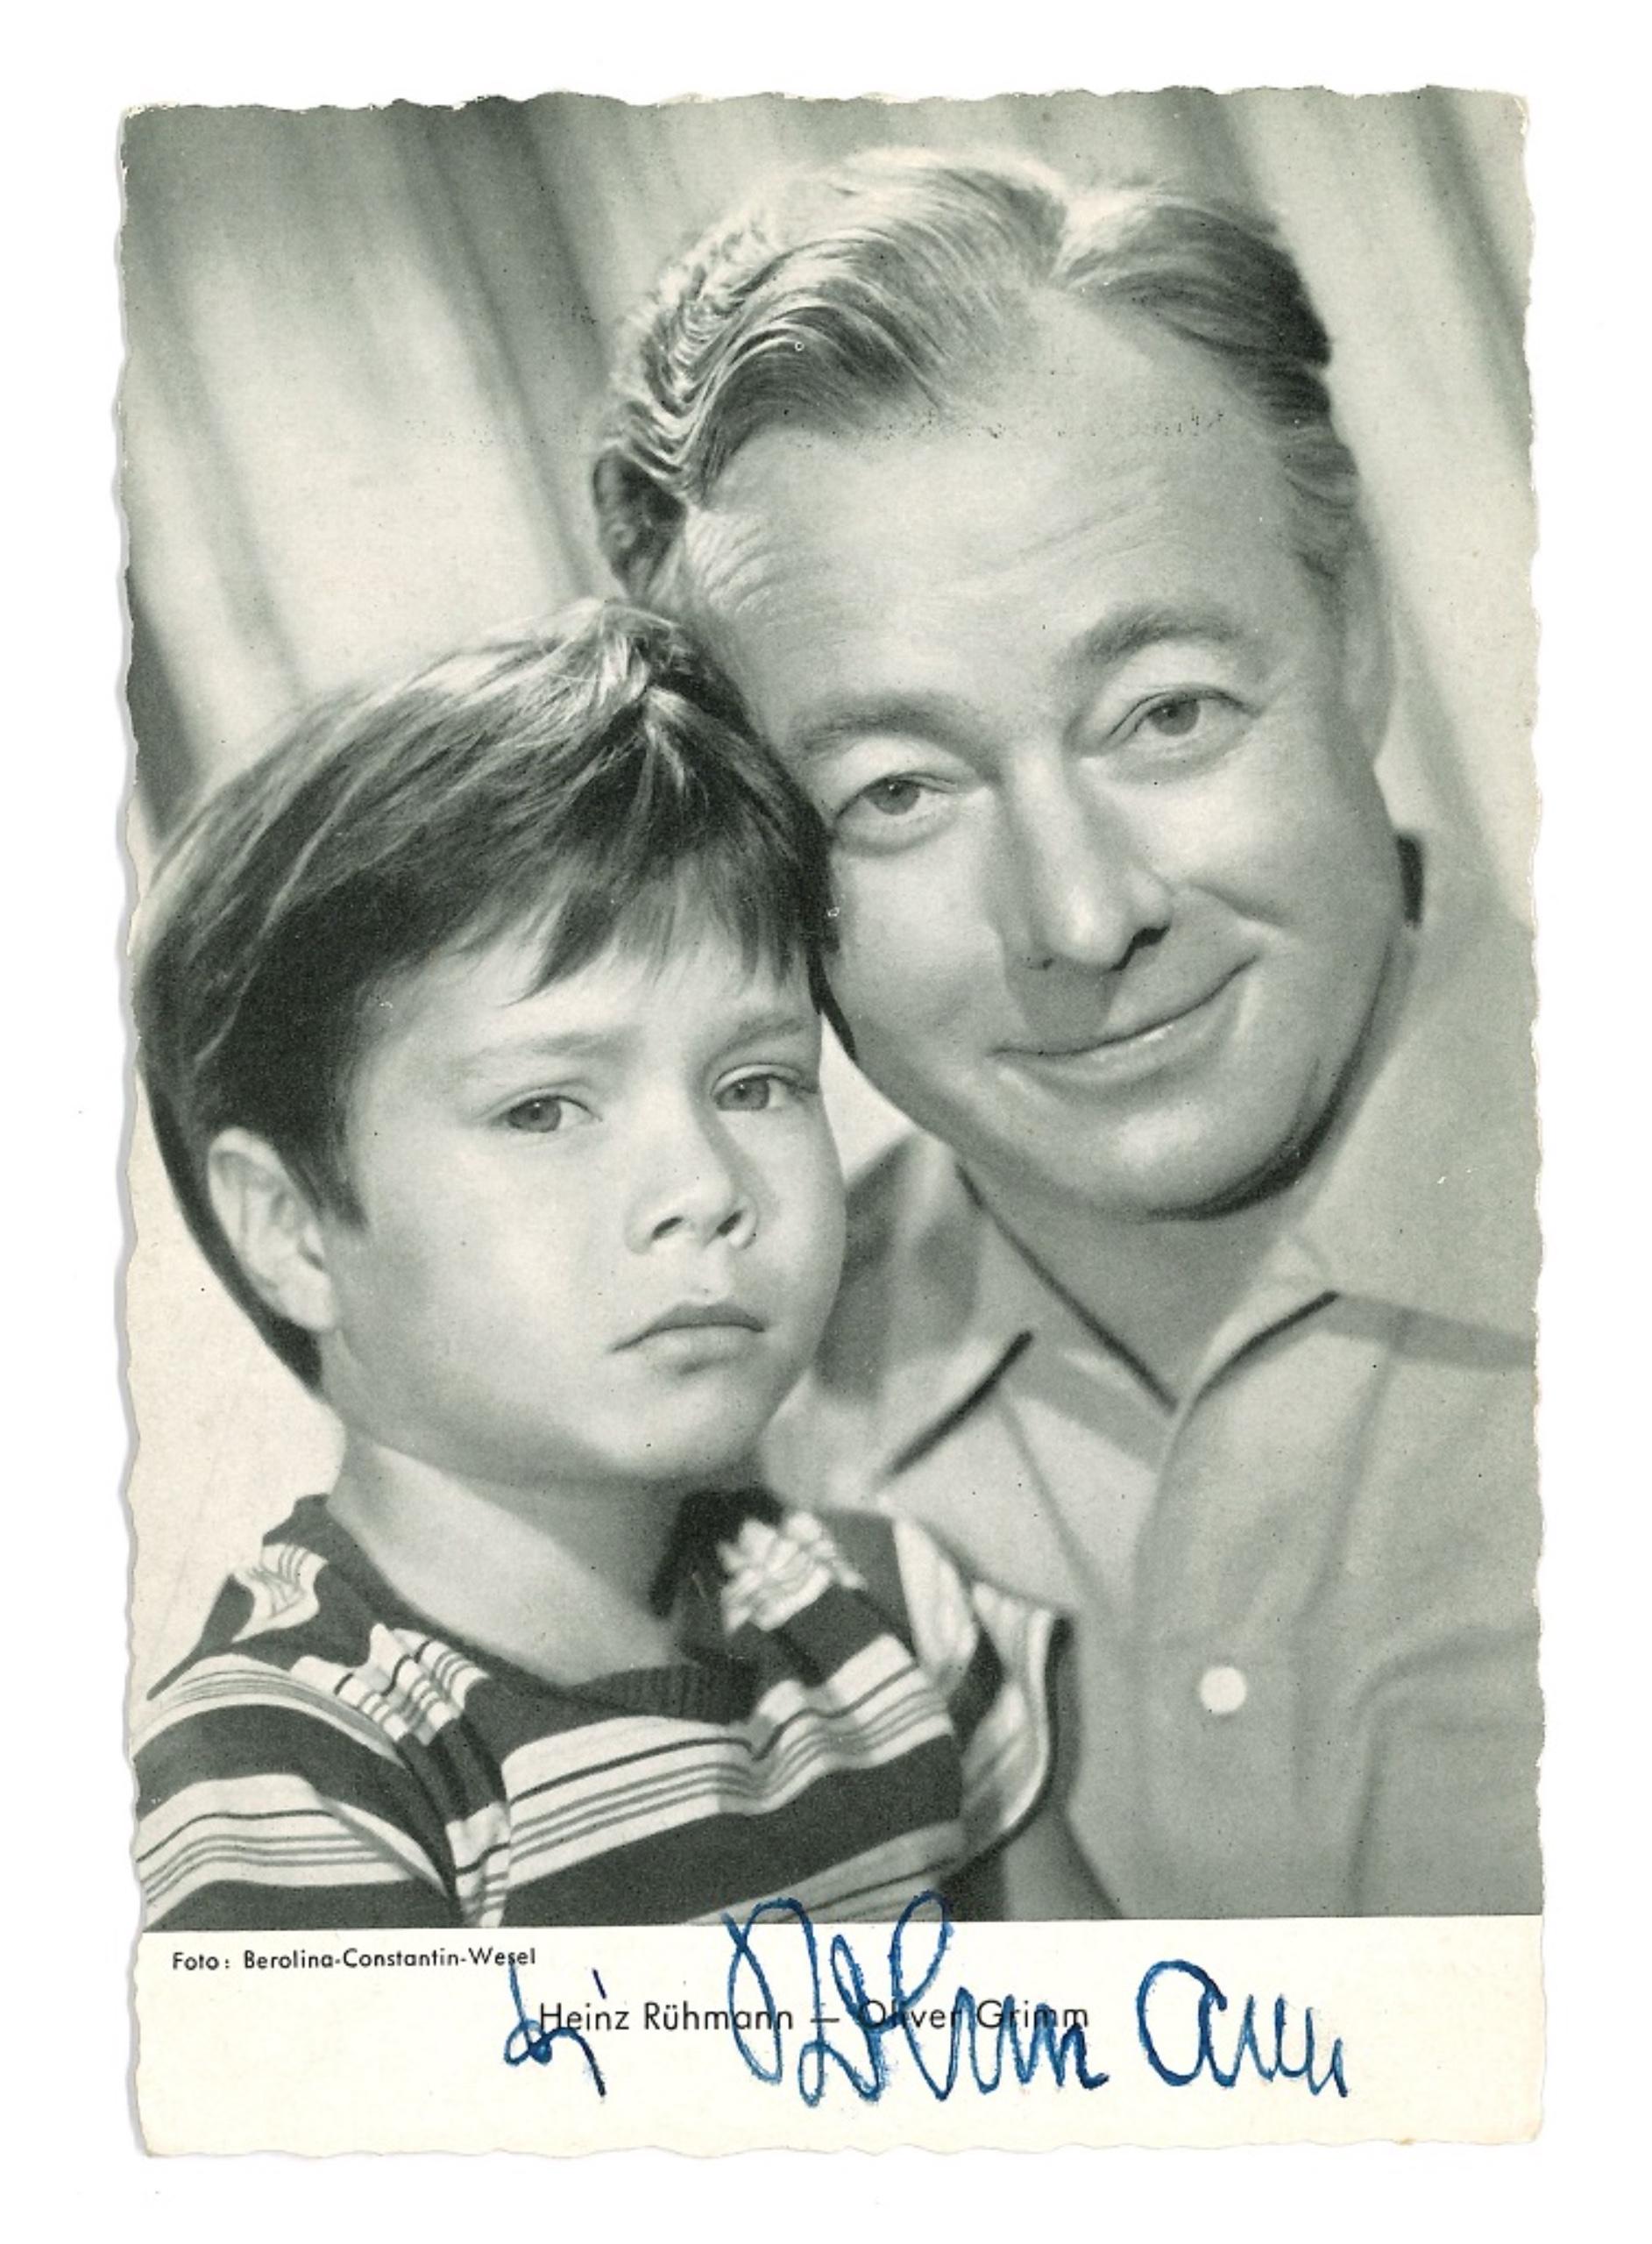 Unknown Portrait Photograph - Autographed Portrait of H. Rühmann und O. Grimm - Vintage b/w Postcard - 1950s